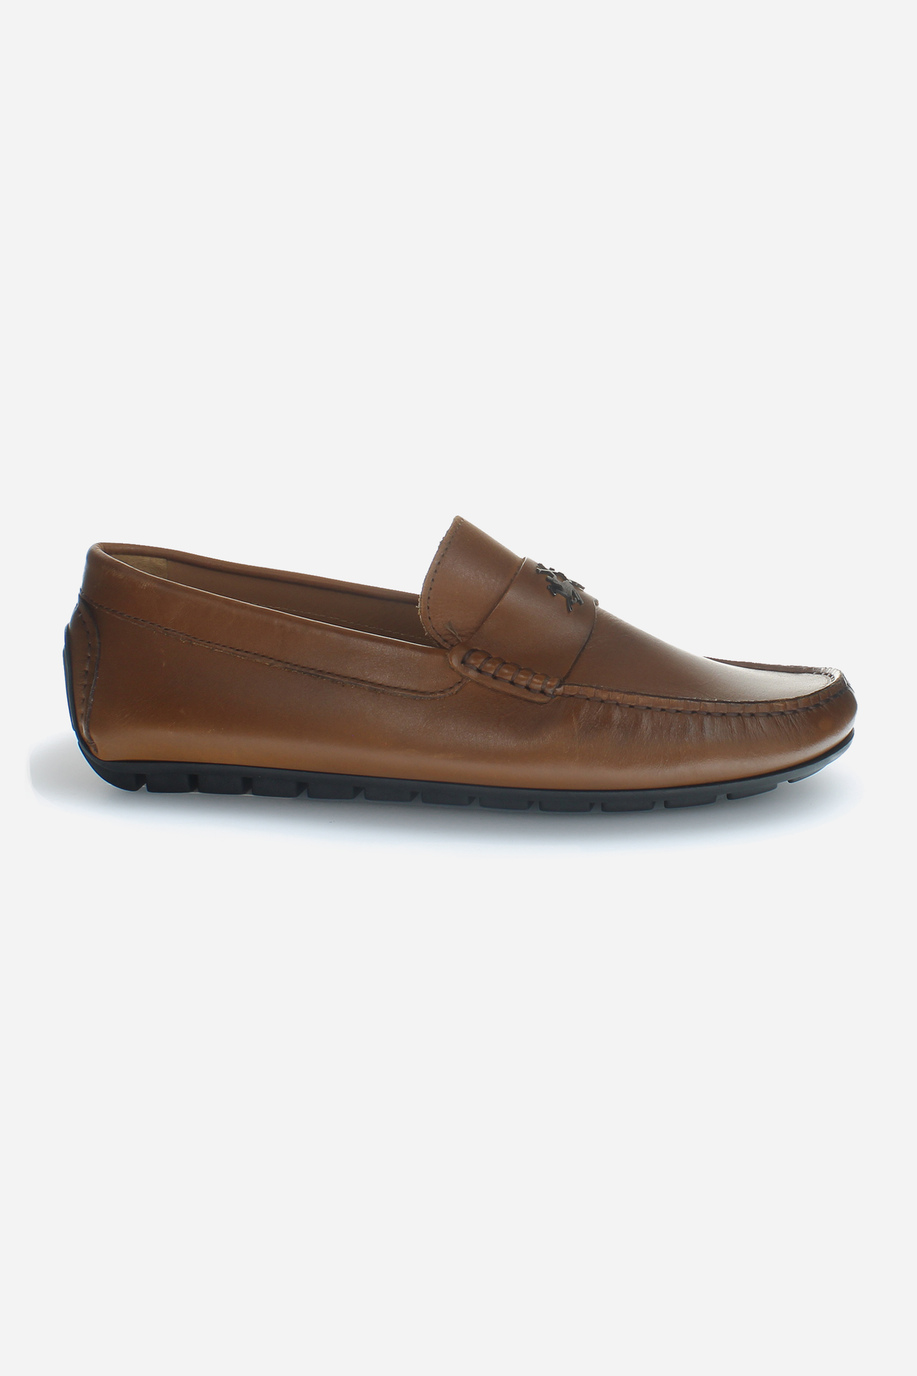 Calfskin leather moccasins - Formal Shoes | La Martina - Official Online Shop